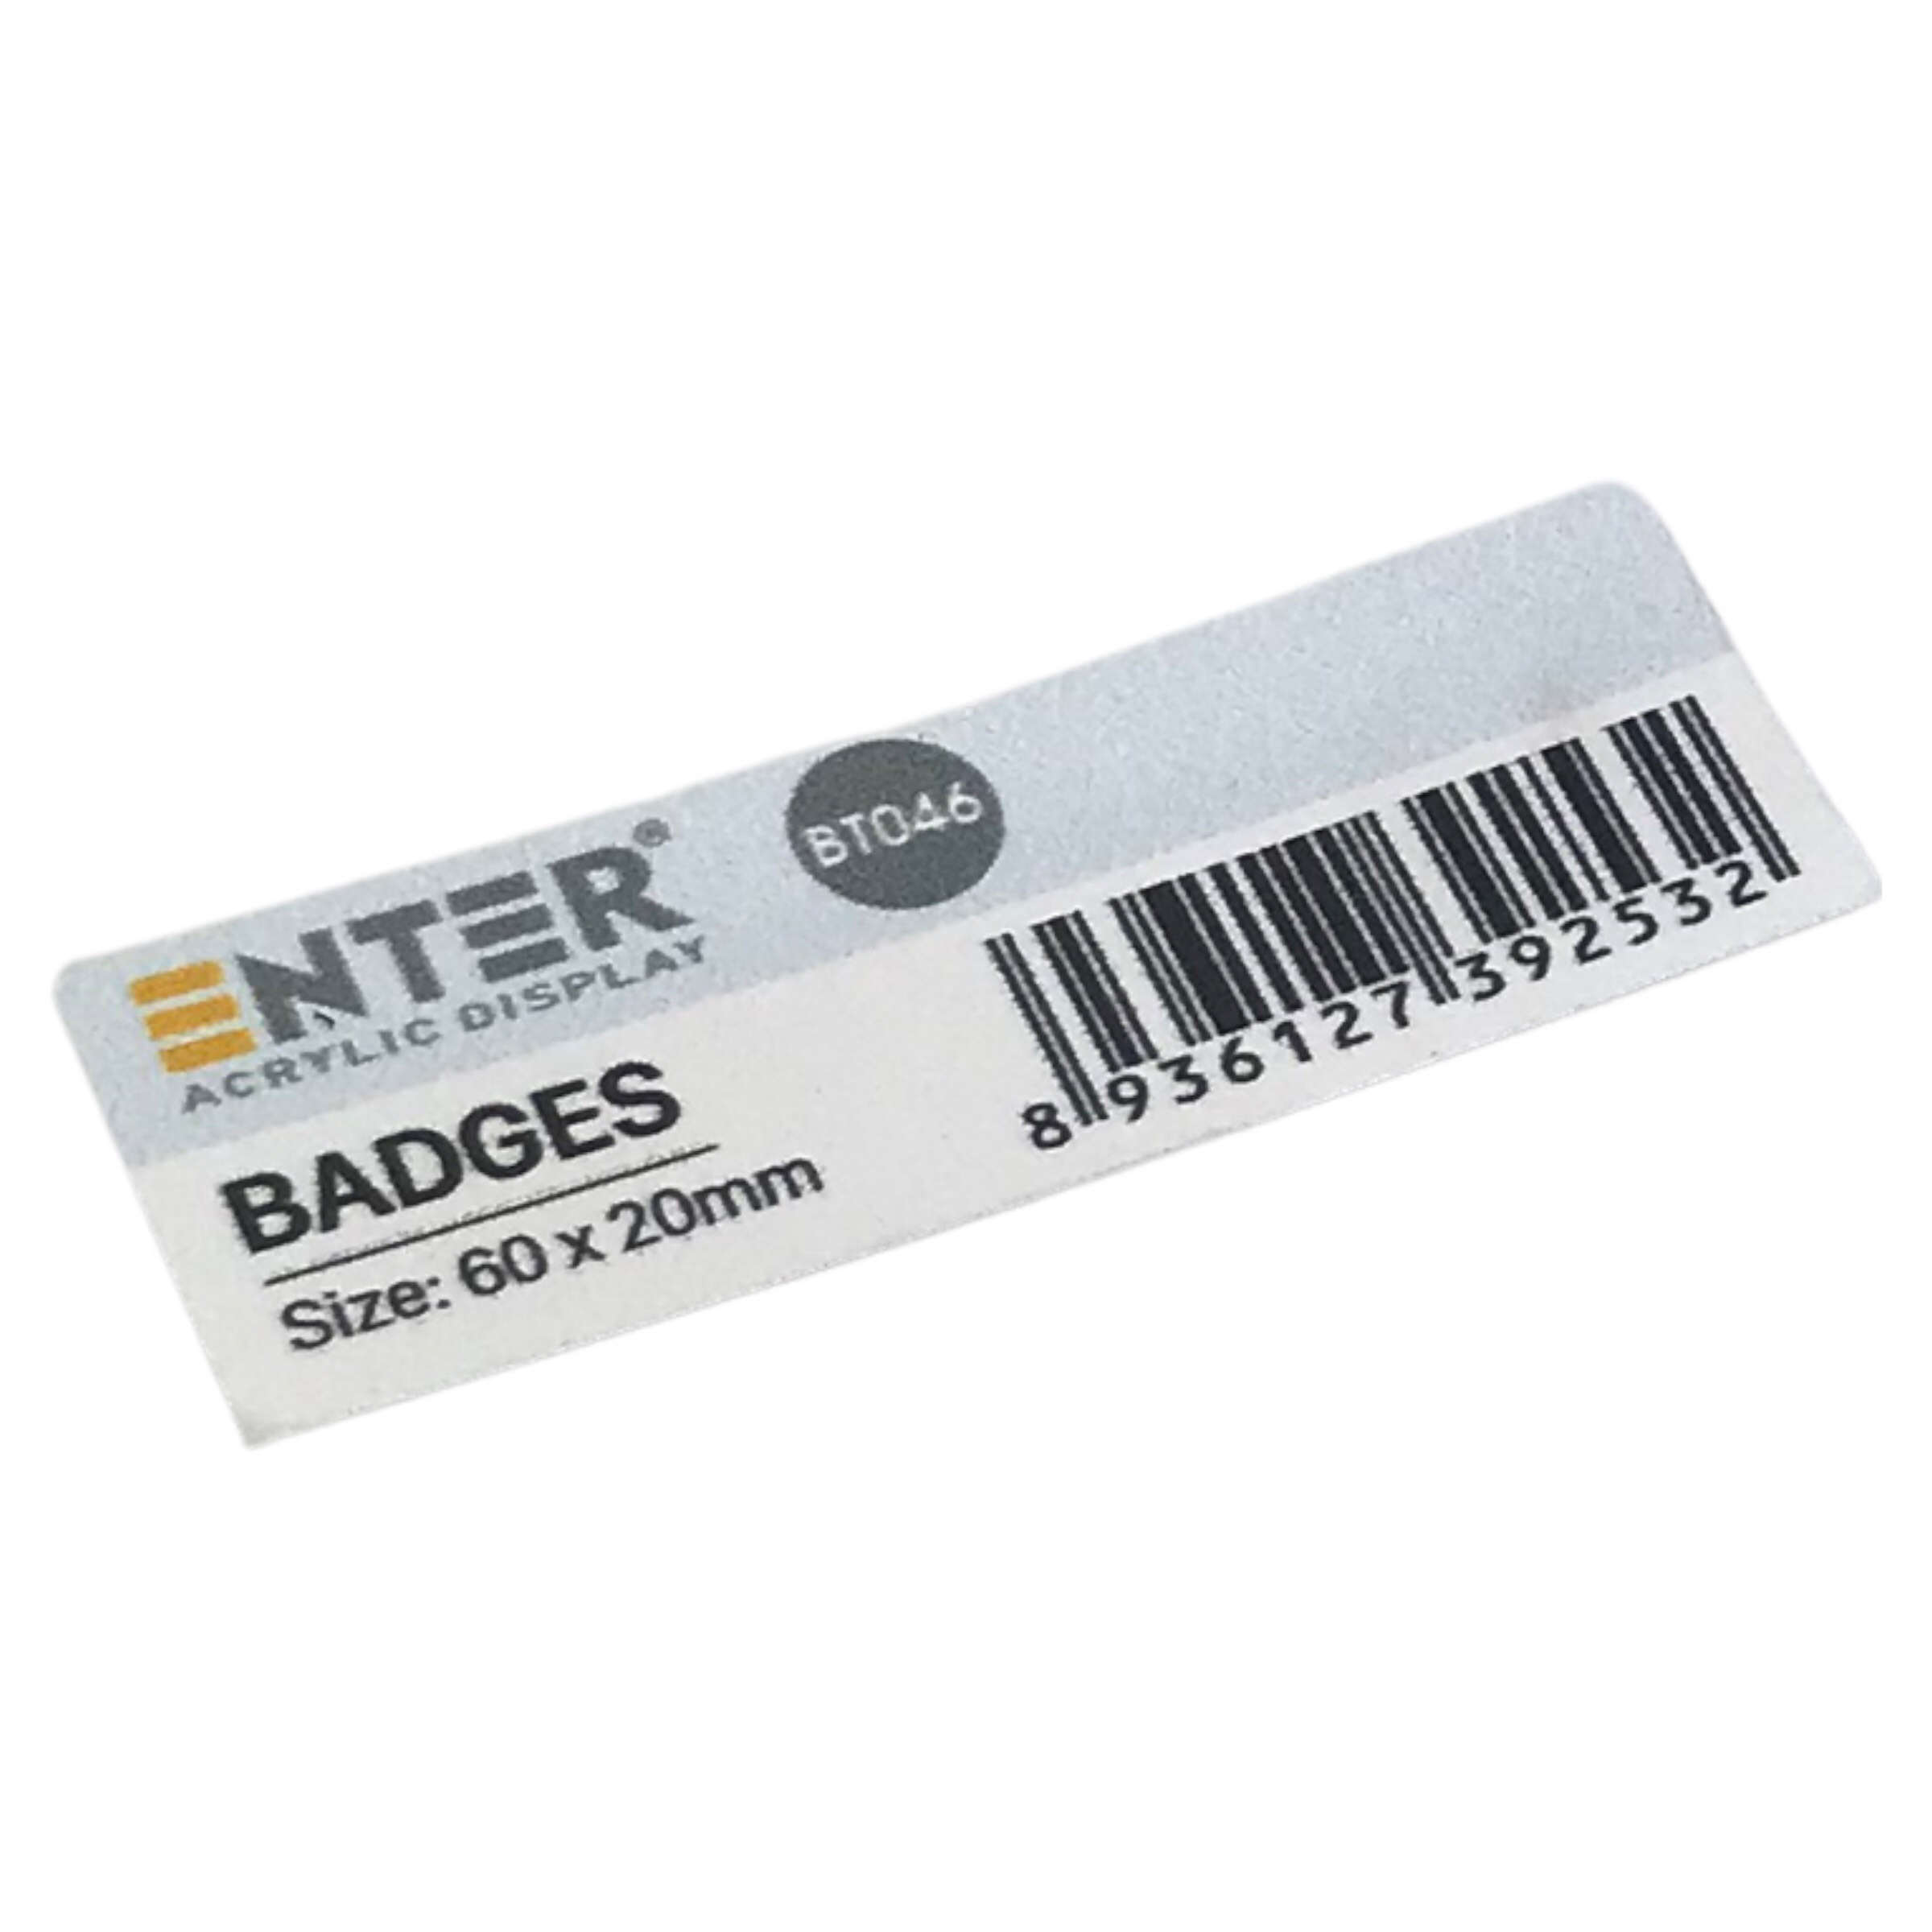 Phôi thẻ tên inox Enter BT046 60x20mm trắng xước K004A (10,50) - Bịch (10)